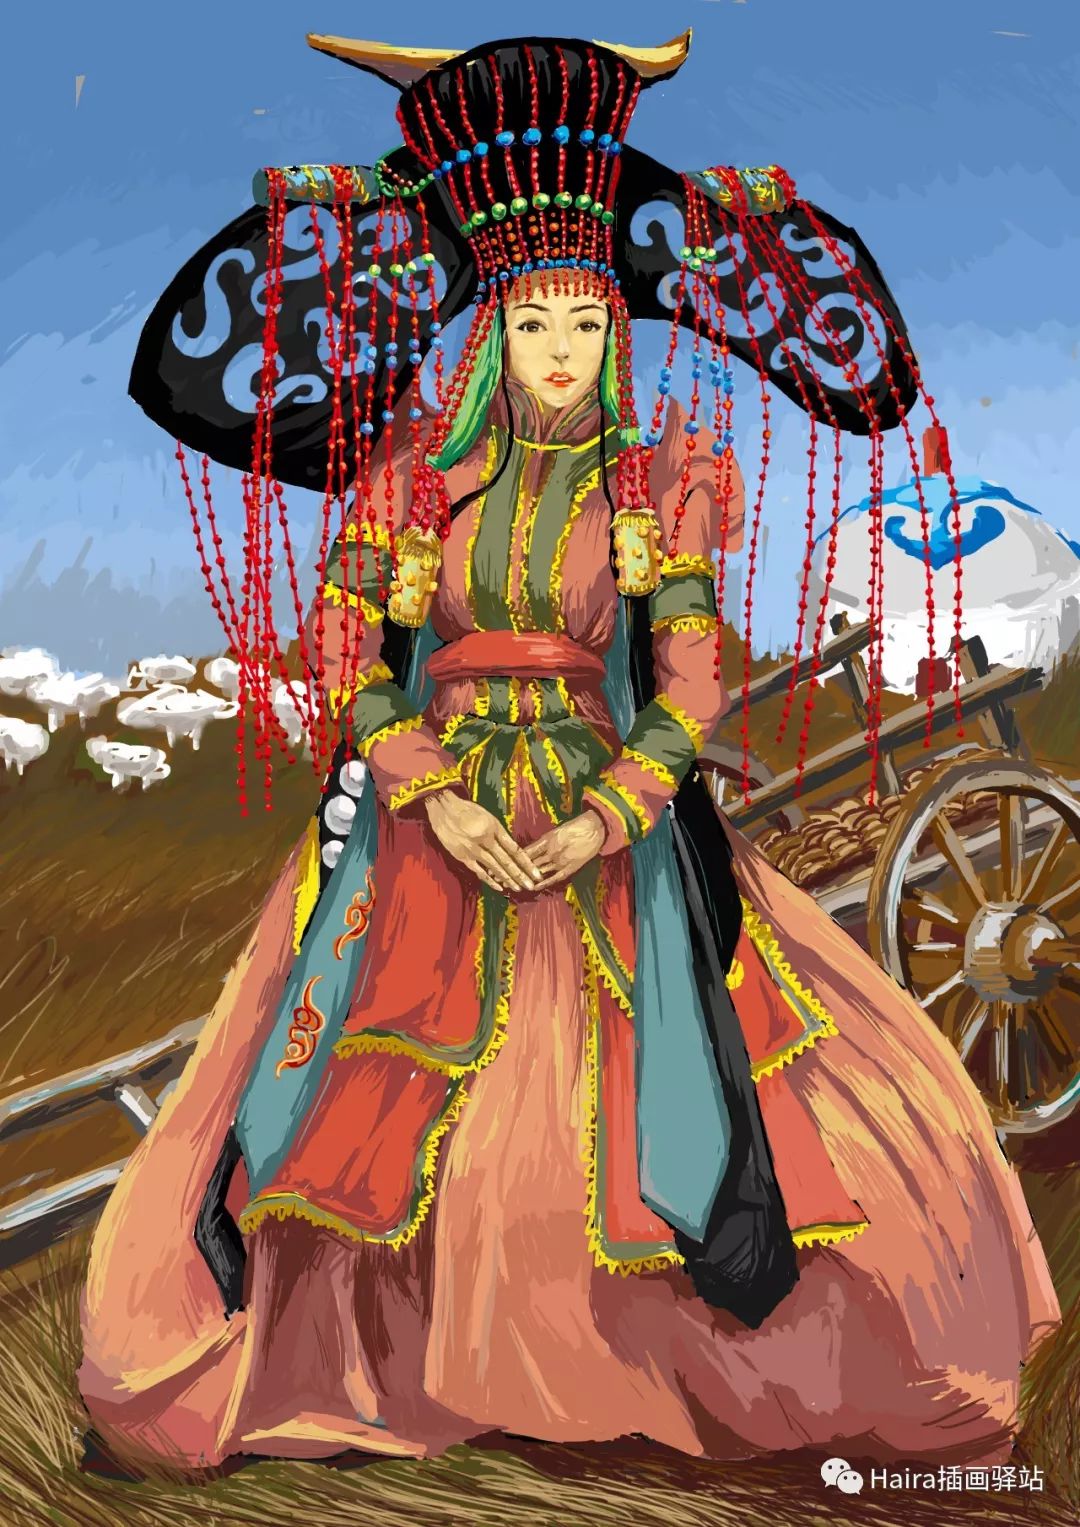 鄂尔多斯蒙古族新娘头饰 - 文化遗产 - 鄂尔多斯市恒创文化有限公司-创意草原